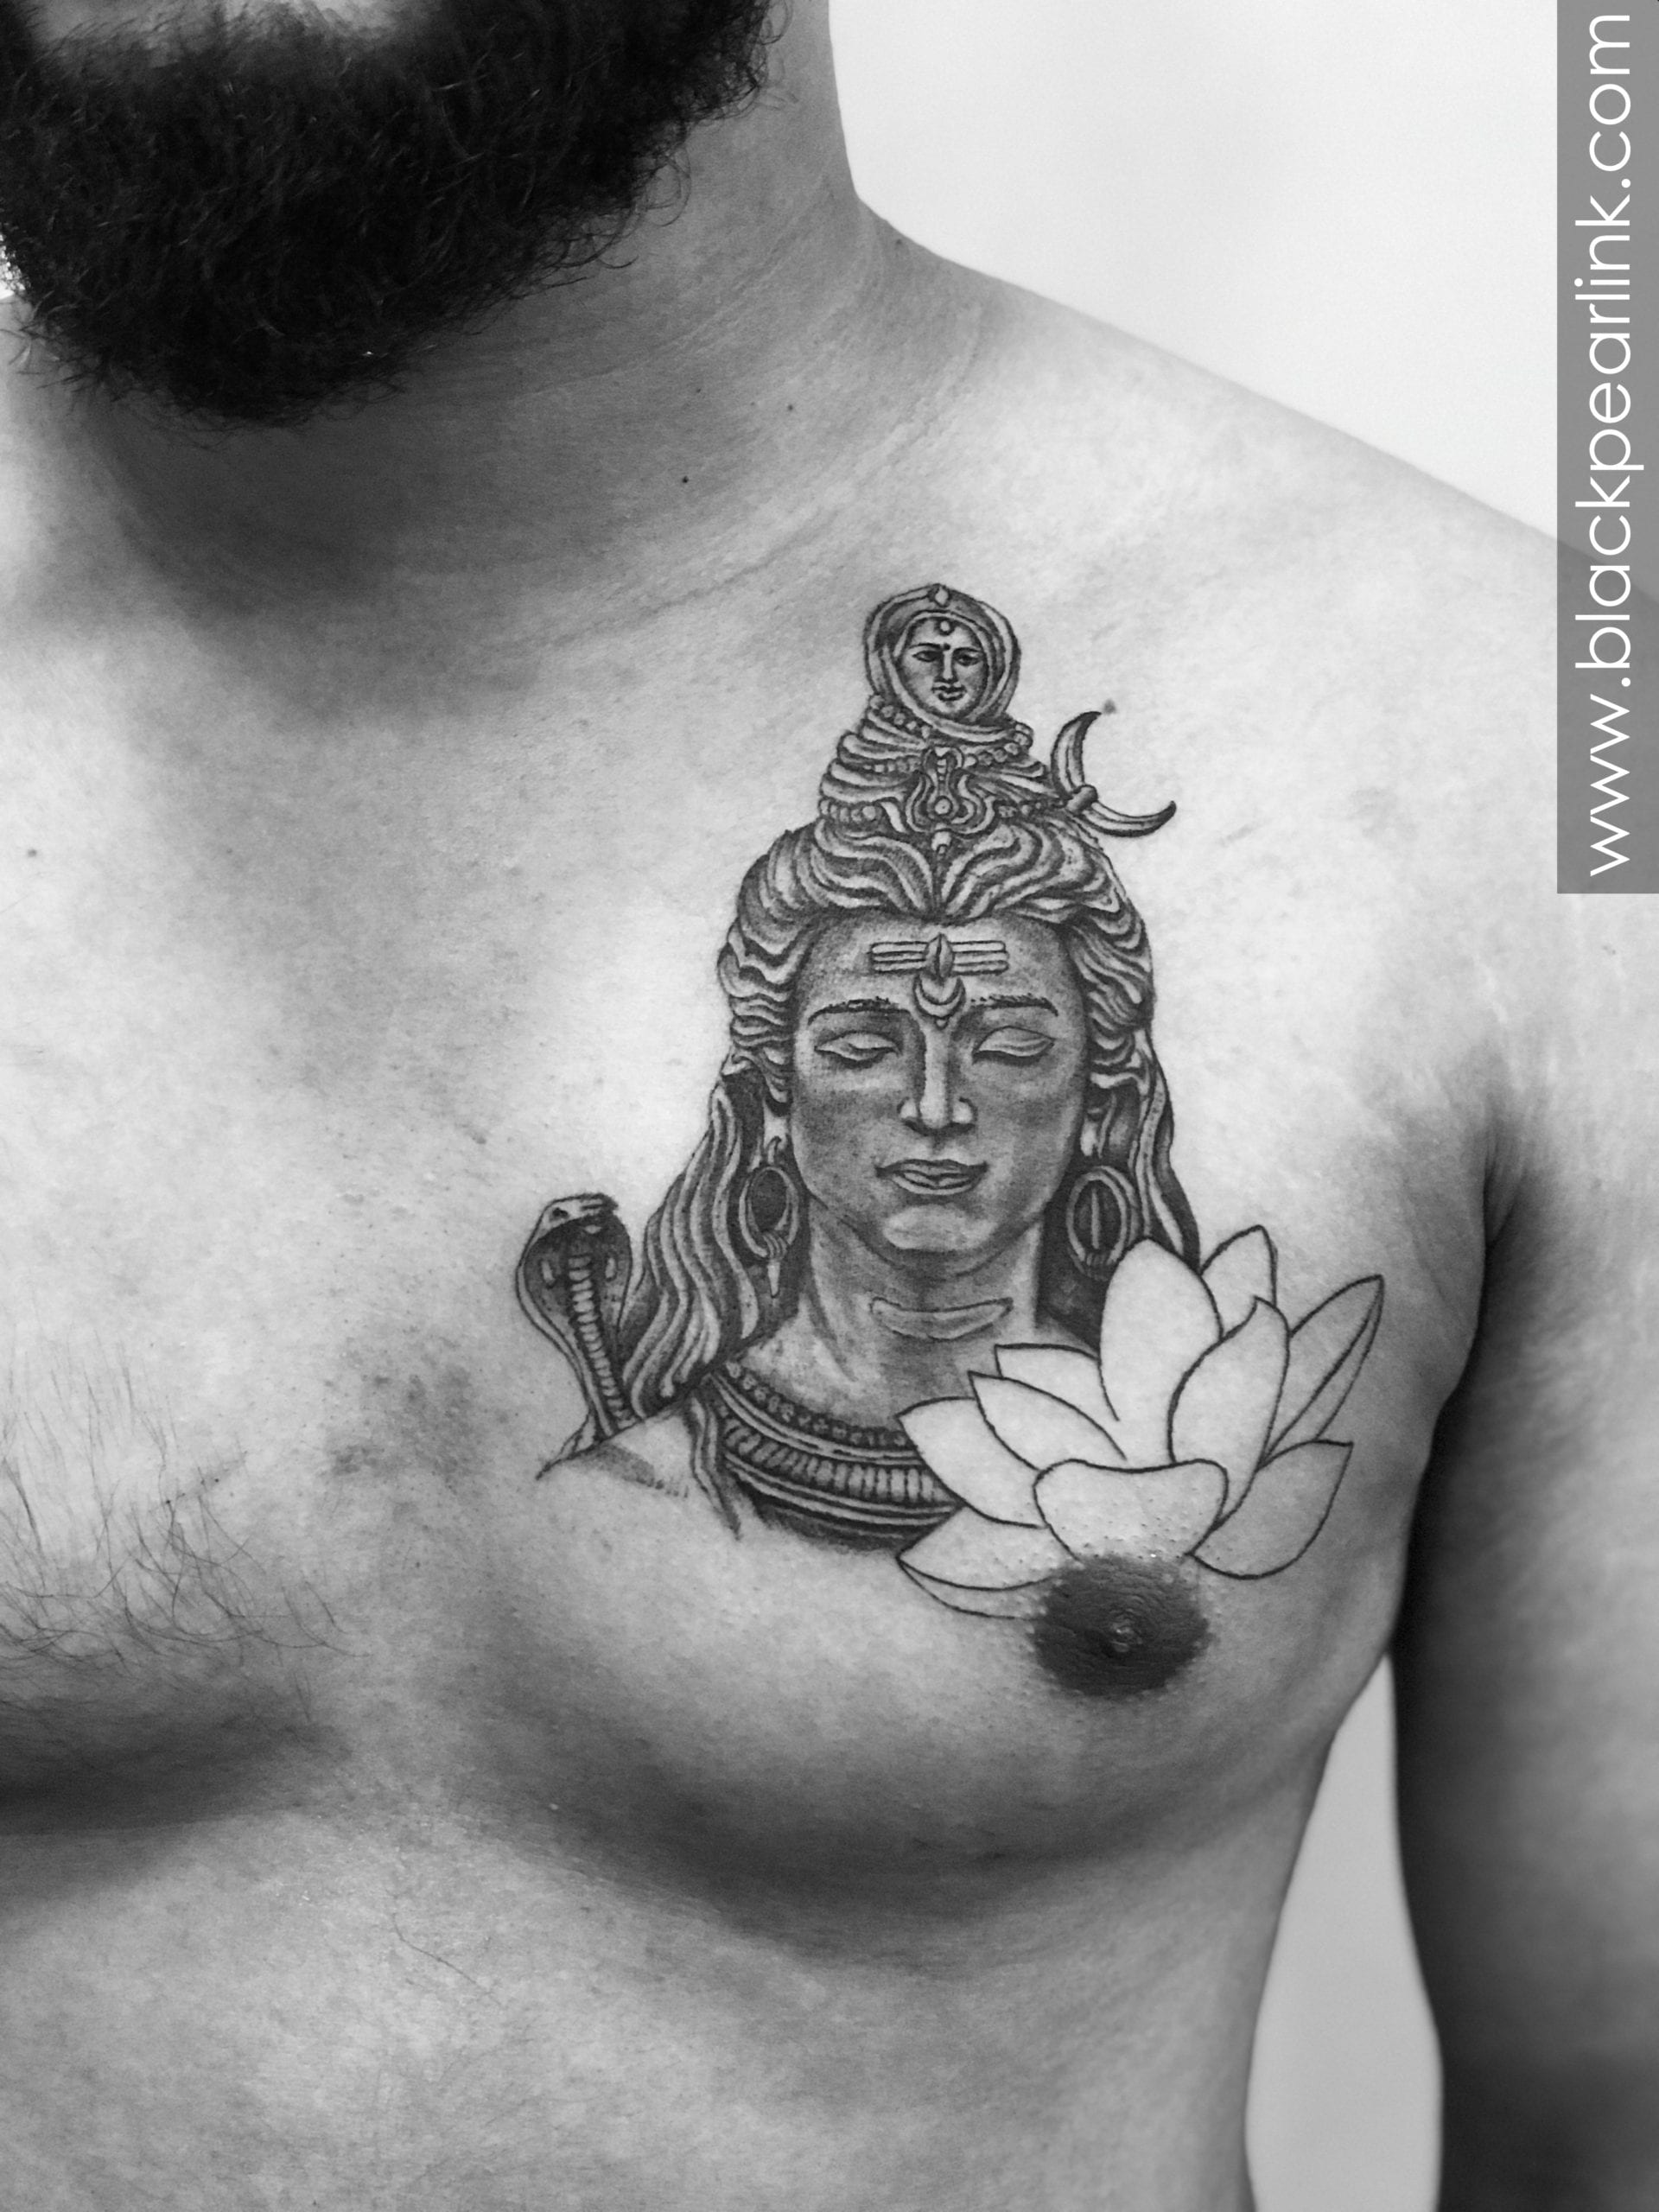 Shiva Tattoo Done by @adi_inc Studio @hawktattooofficial Location  @selectcitywalk . . . #tattoo #tattoos #shiva #ink #love… | Instagram